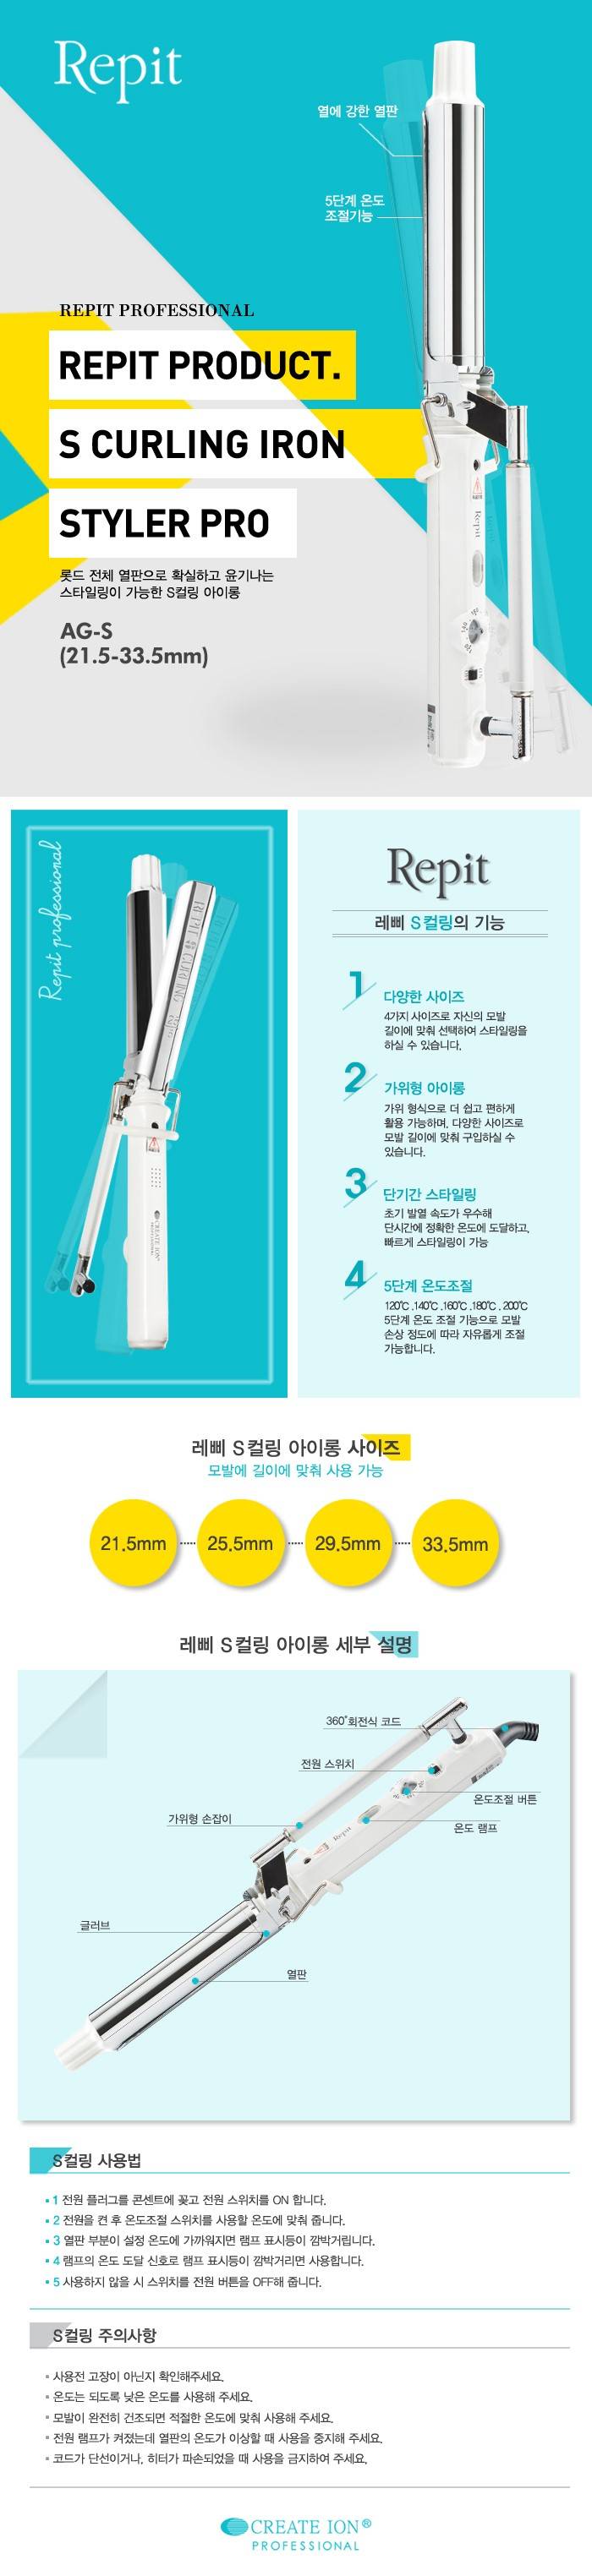 헤어샵 아이롱✨ 레삐 아이롱 29.5mm 판매합니다 | 인스티즈